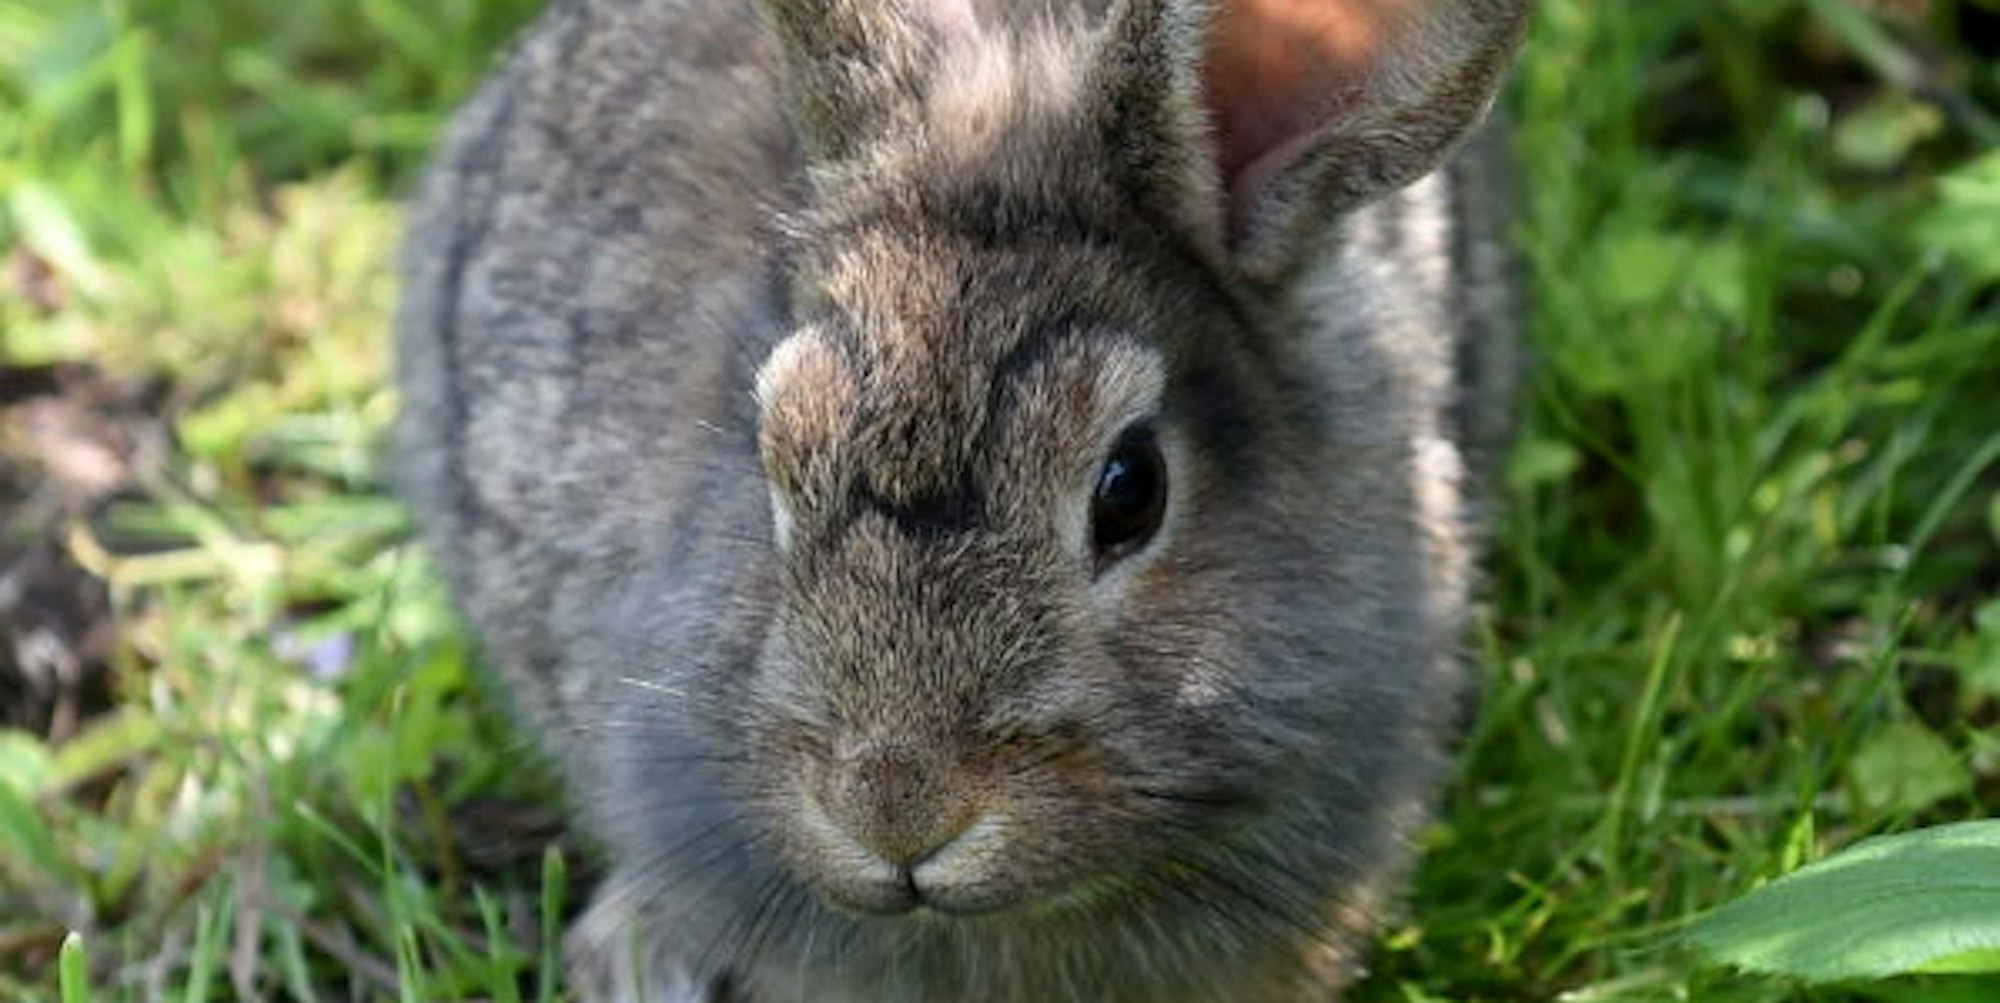 Mögen es offenbar auch exotisch: Kaninchen fressen in den Botanischen Gärten der Uni seltene Pflanzen.